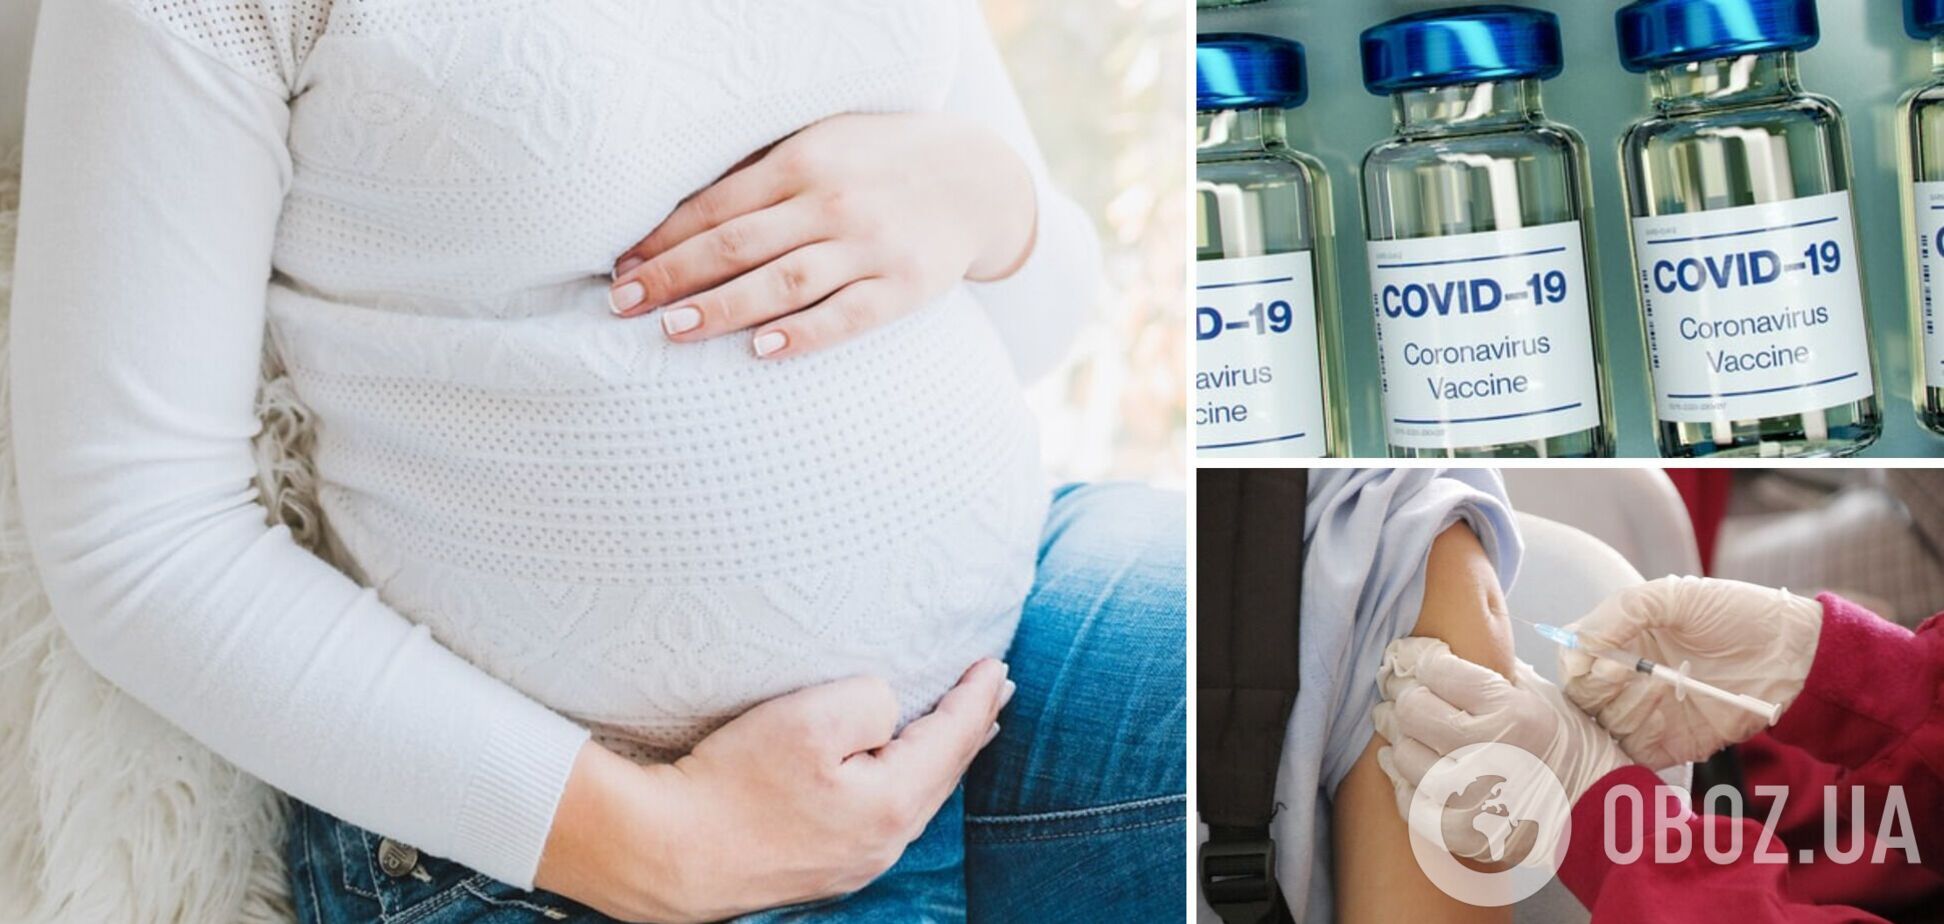 Ученые объяснили, почему беременным нужно вакцинироваться от COVID-19: результаты нового исследования